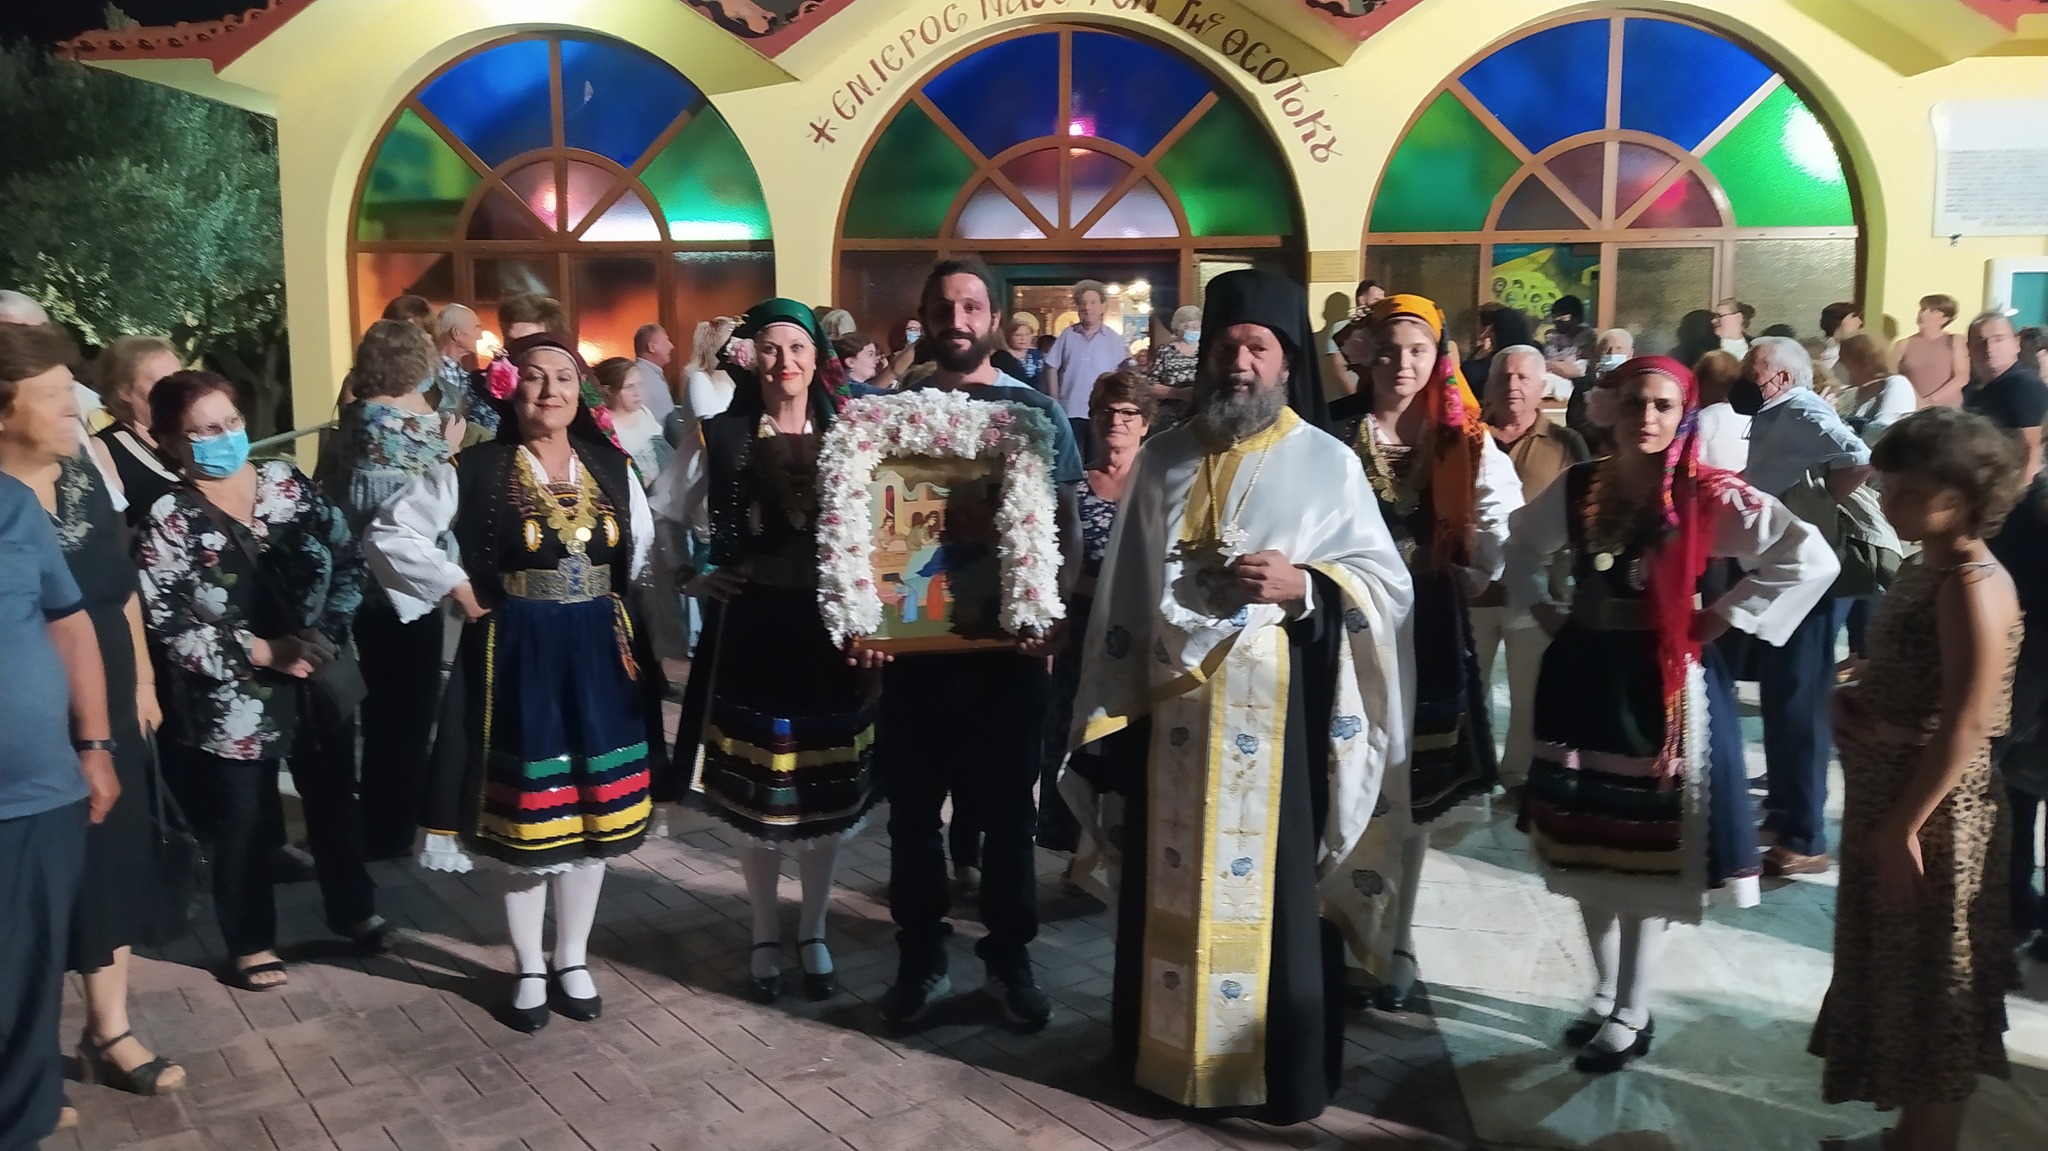 Με μεγάλη επιτυχία πραγματοποιήθηκε στο Μεγάλο Κρανοβούνιο, πανηγύρι εν όψει του εορτασμού της ομώνυμης εκκλησίας